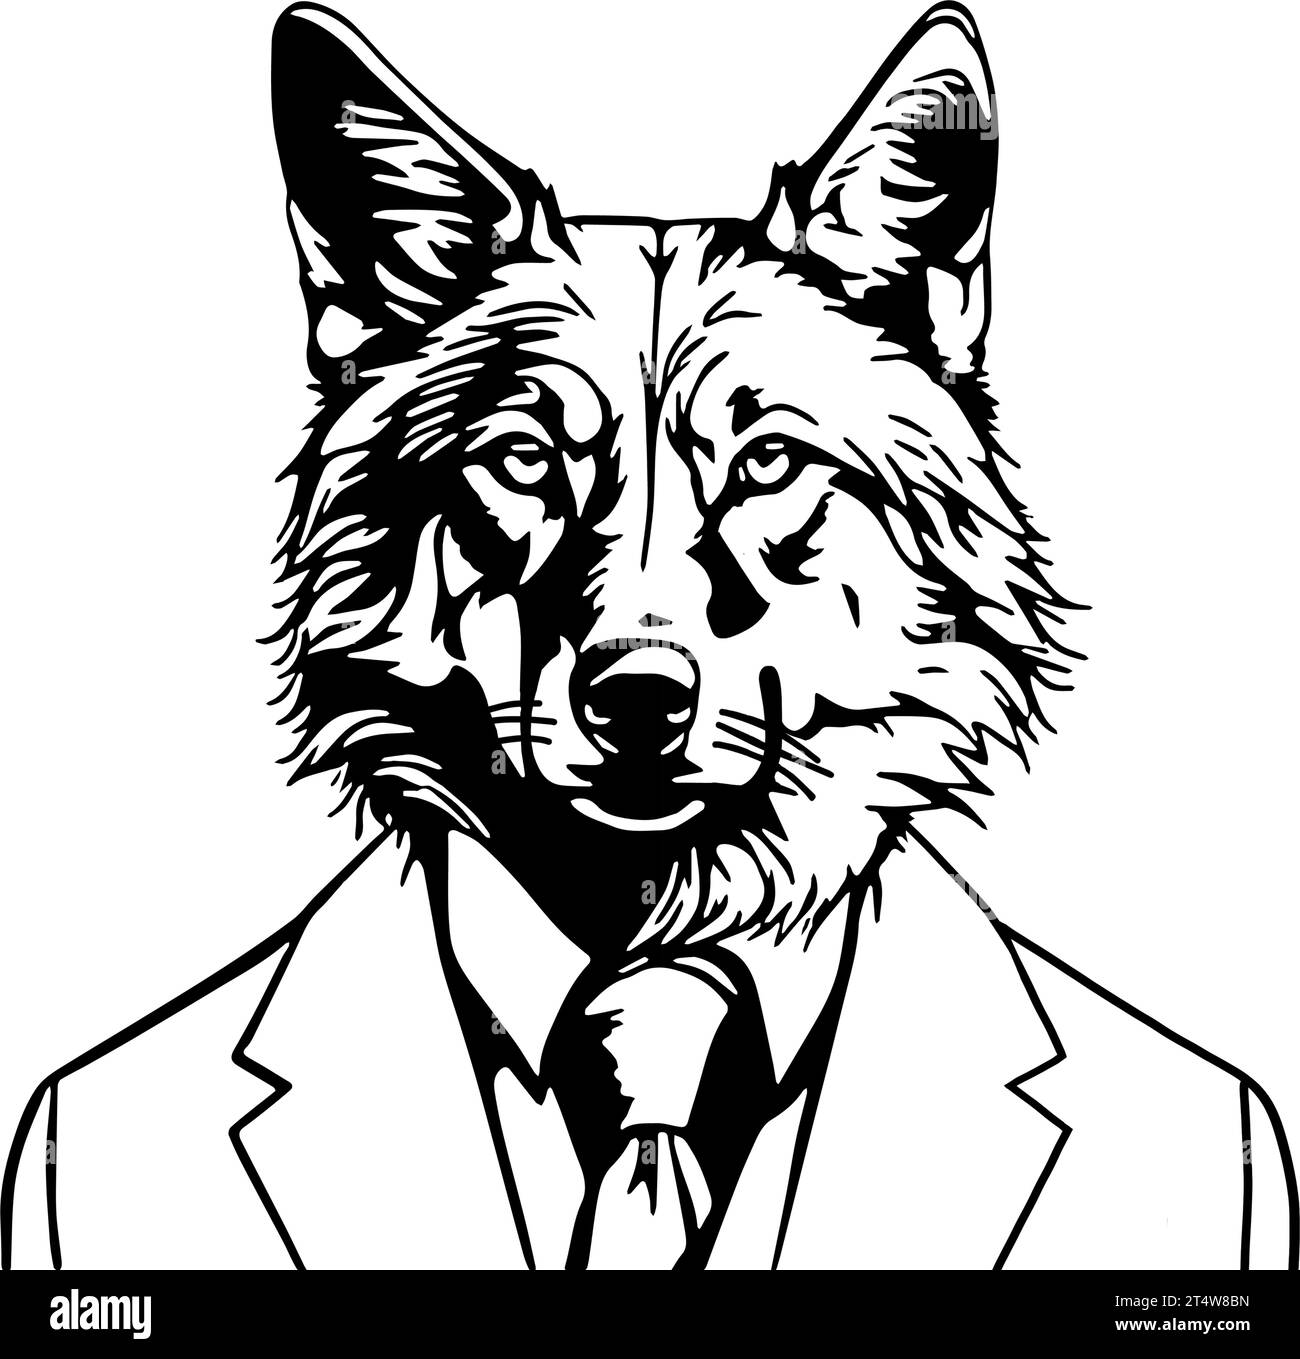 Schwarze Umrisse zeigen einen Wolf, der einen Business-Anzug trägt. Der Vektor symbolisiert typische Merkmale eines Wolfs, die auch ein Geschäftsmann haben kann. Stock Vektor